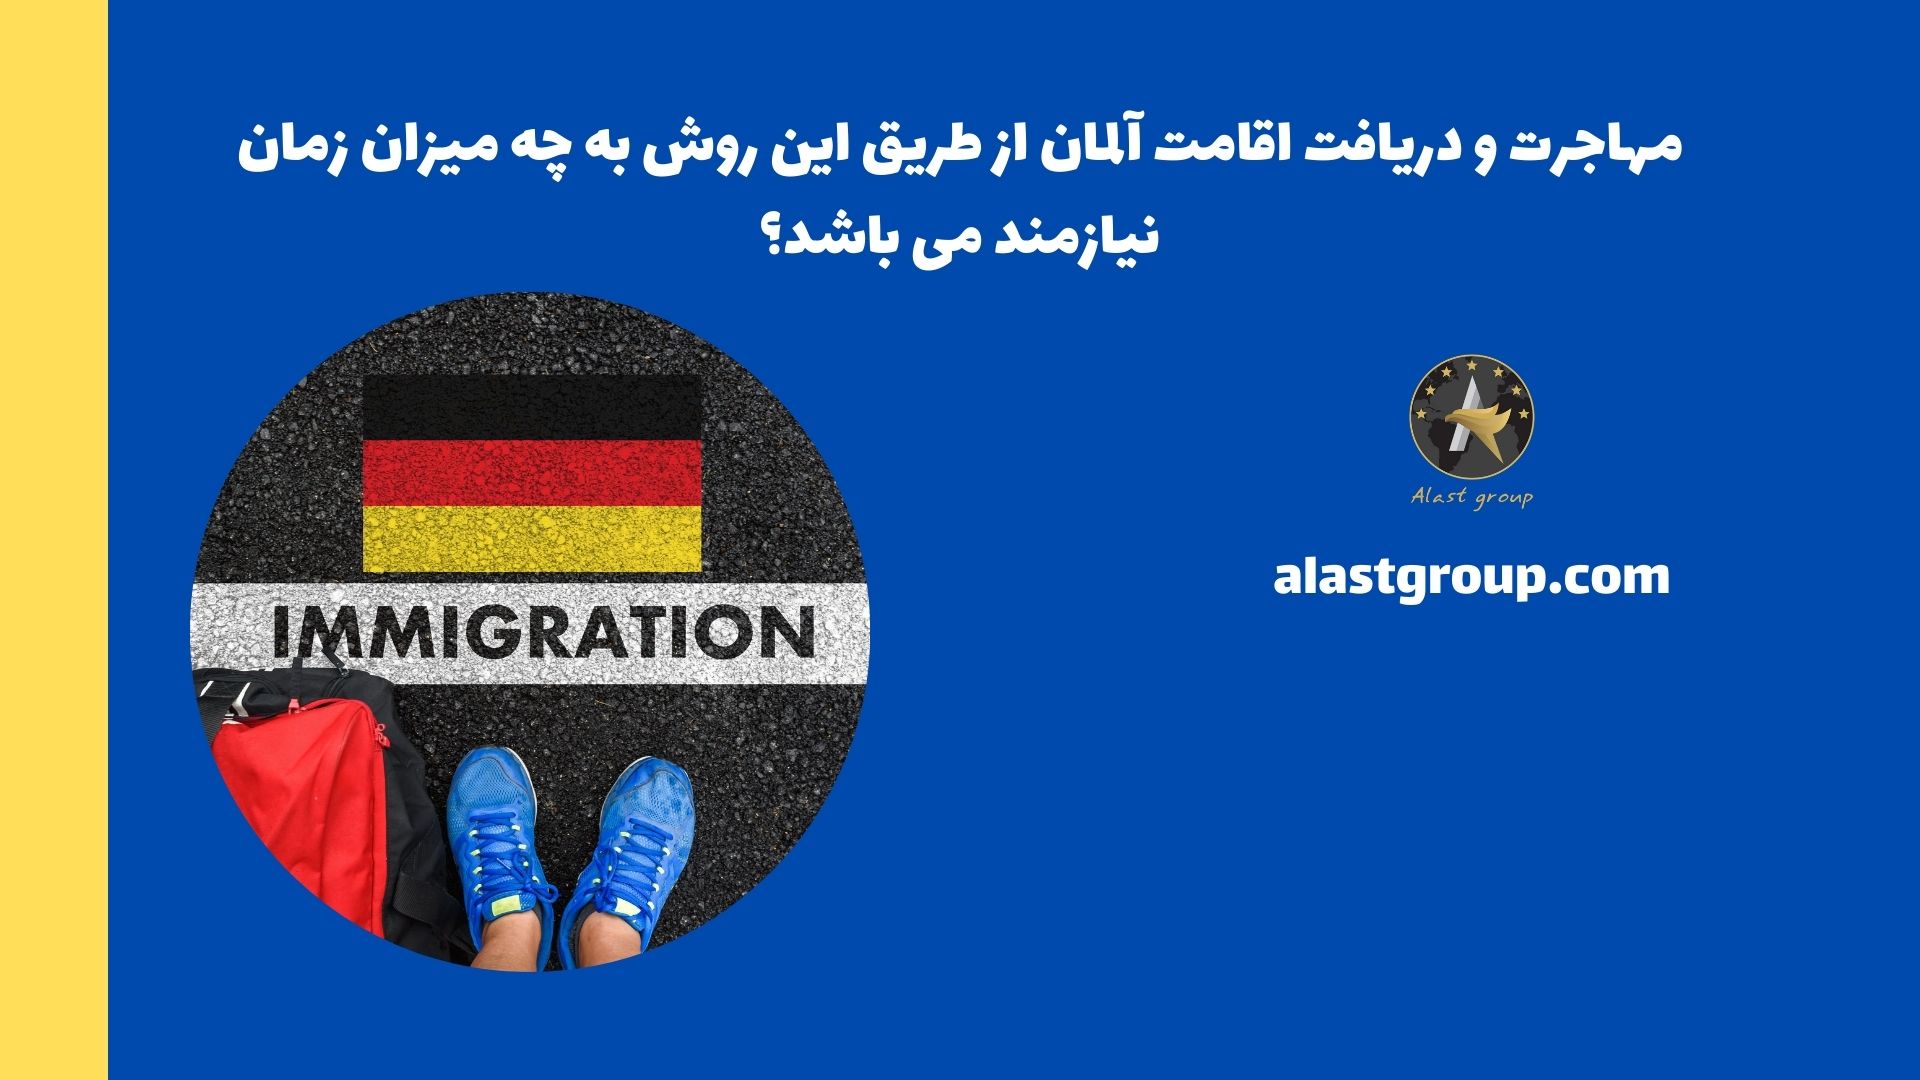 مهاجرت و دریافت اقامت آلمان از طریق این روش به چه میزان زمان نیازمند می باشد؟